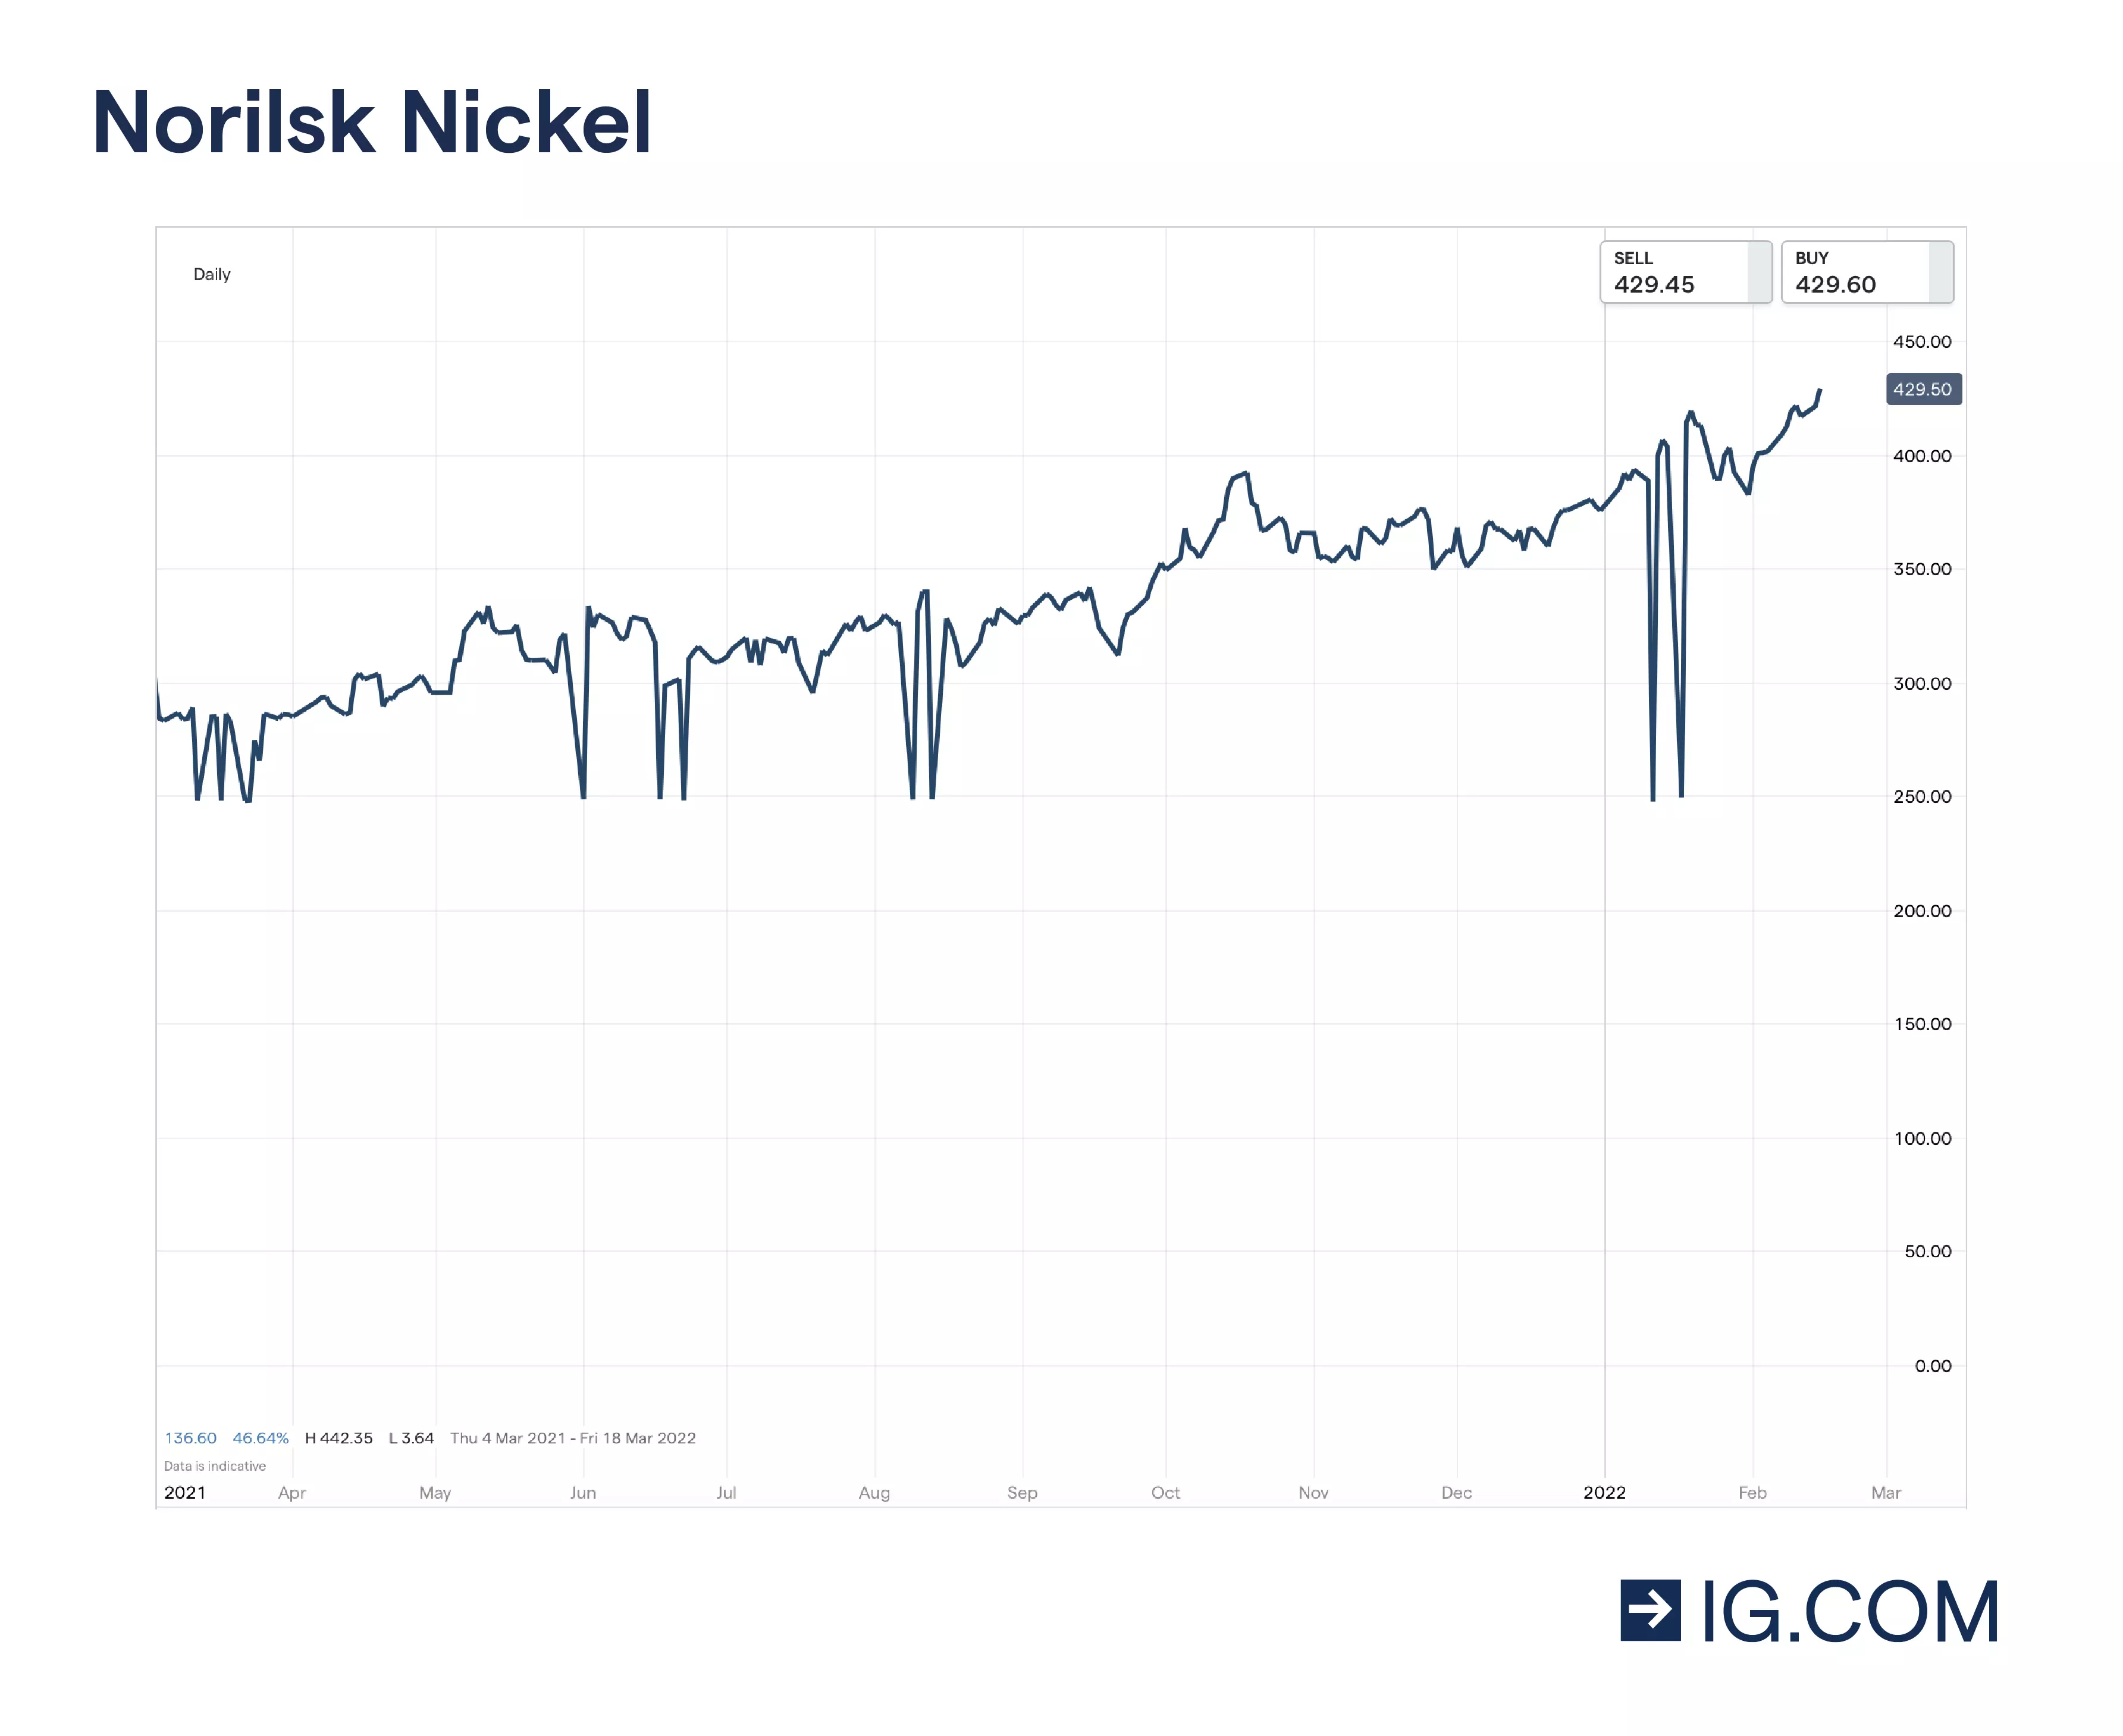 Grafico delle azioni Norilsk Nickel che rappresenta i massimi e i minimi dei prezzi dell'azione negli ultimi 12 mesi